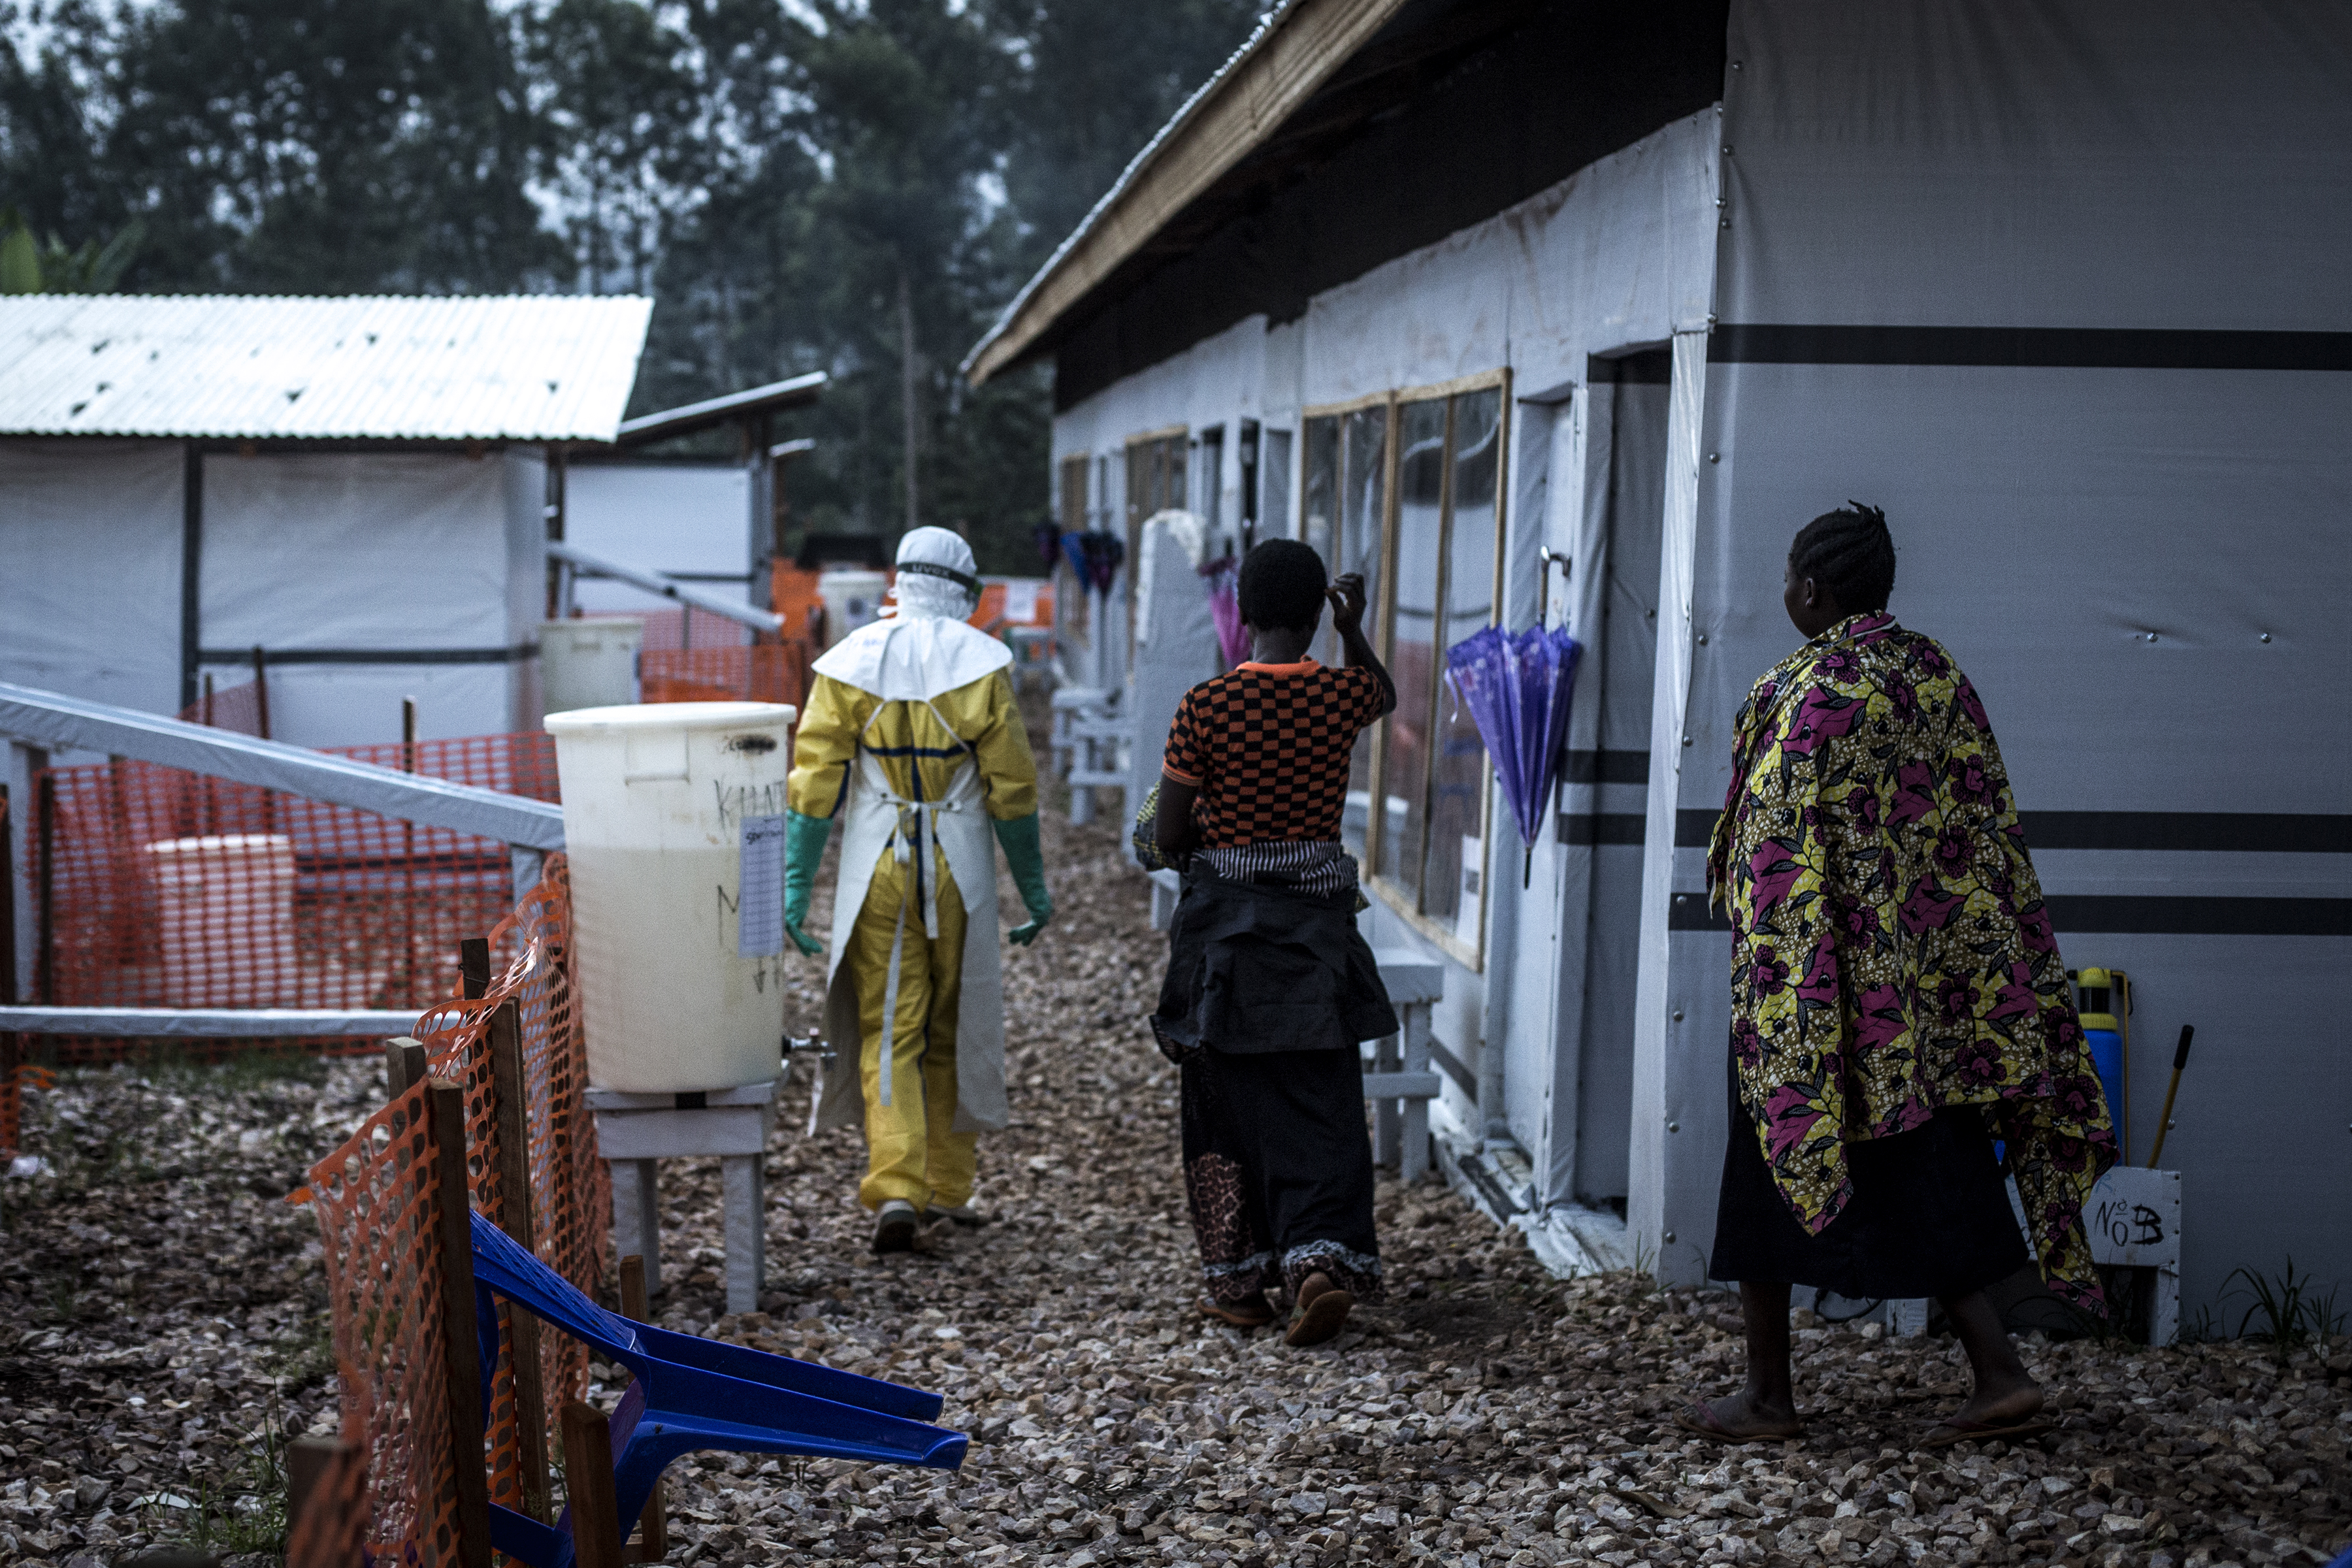 Un travailleur de la santé escorte deux femmes, suspectées d'être atteintes du virus Ebola, dans le centre de traitement Ebola de Butembo. © John Wessels en novembre 2018